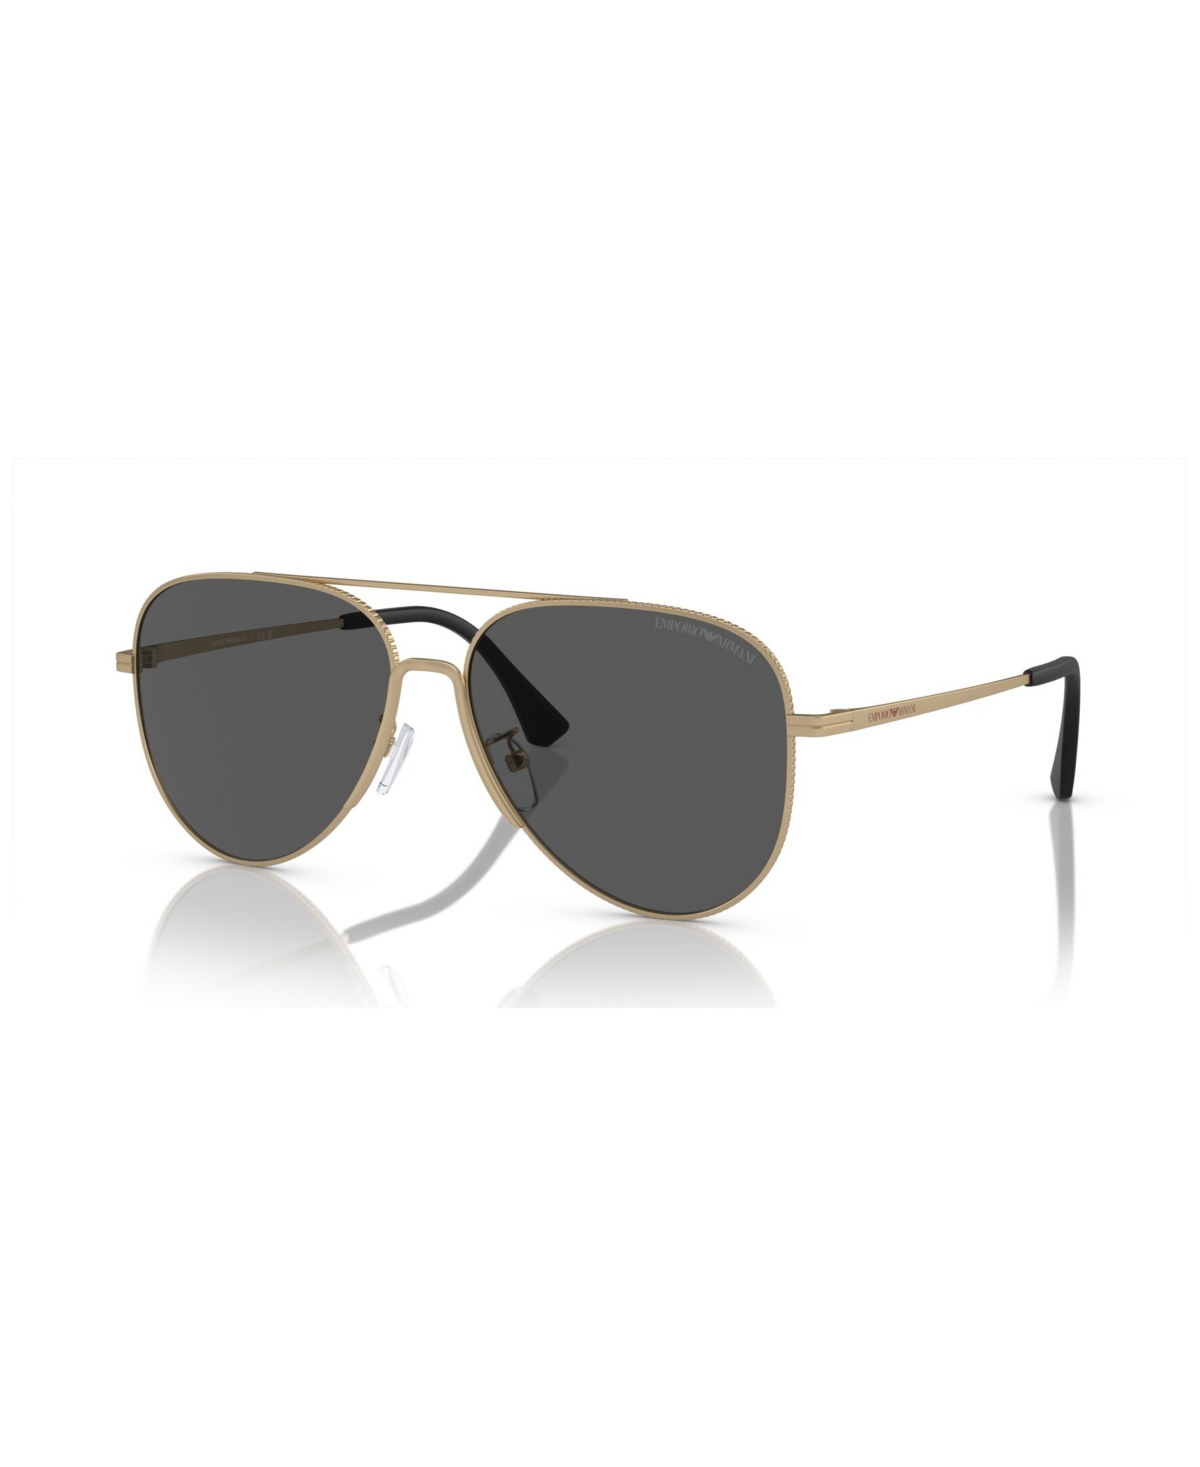 Emporio Armani Men's Sunglasses, Ea2149d In Matte Pale Gold